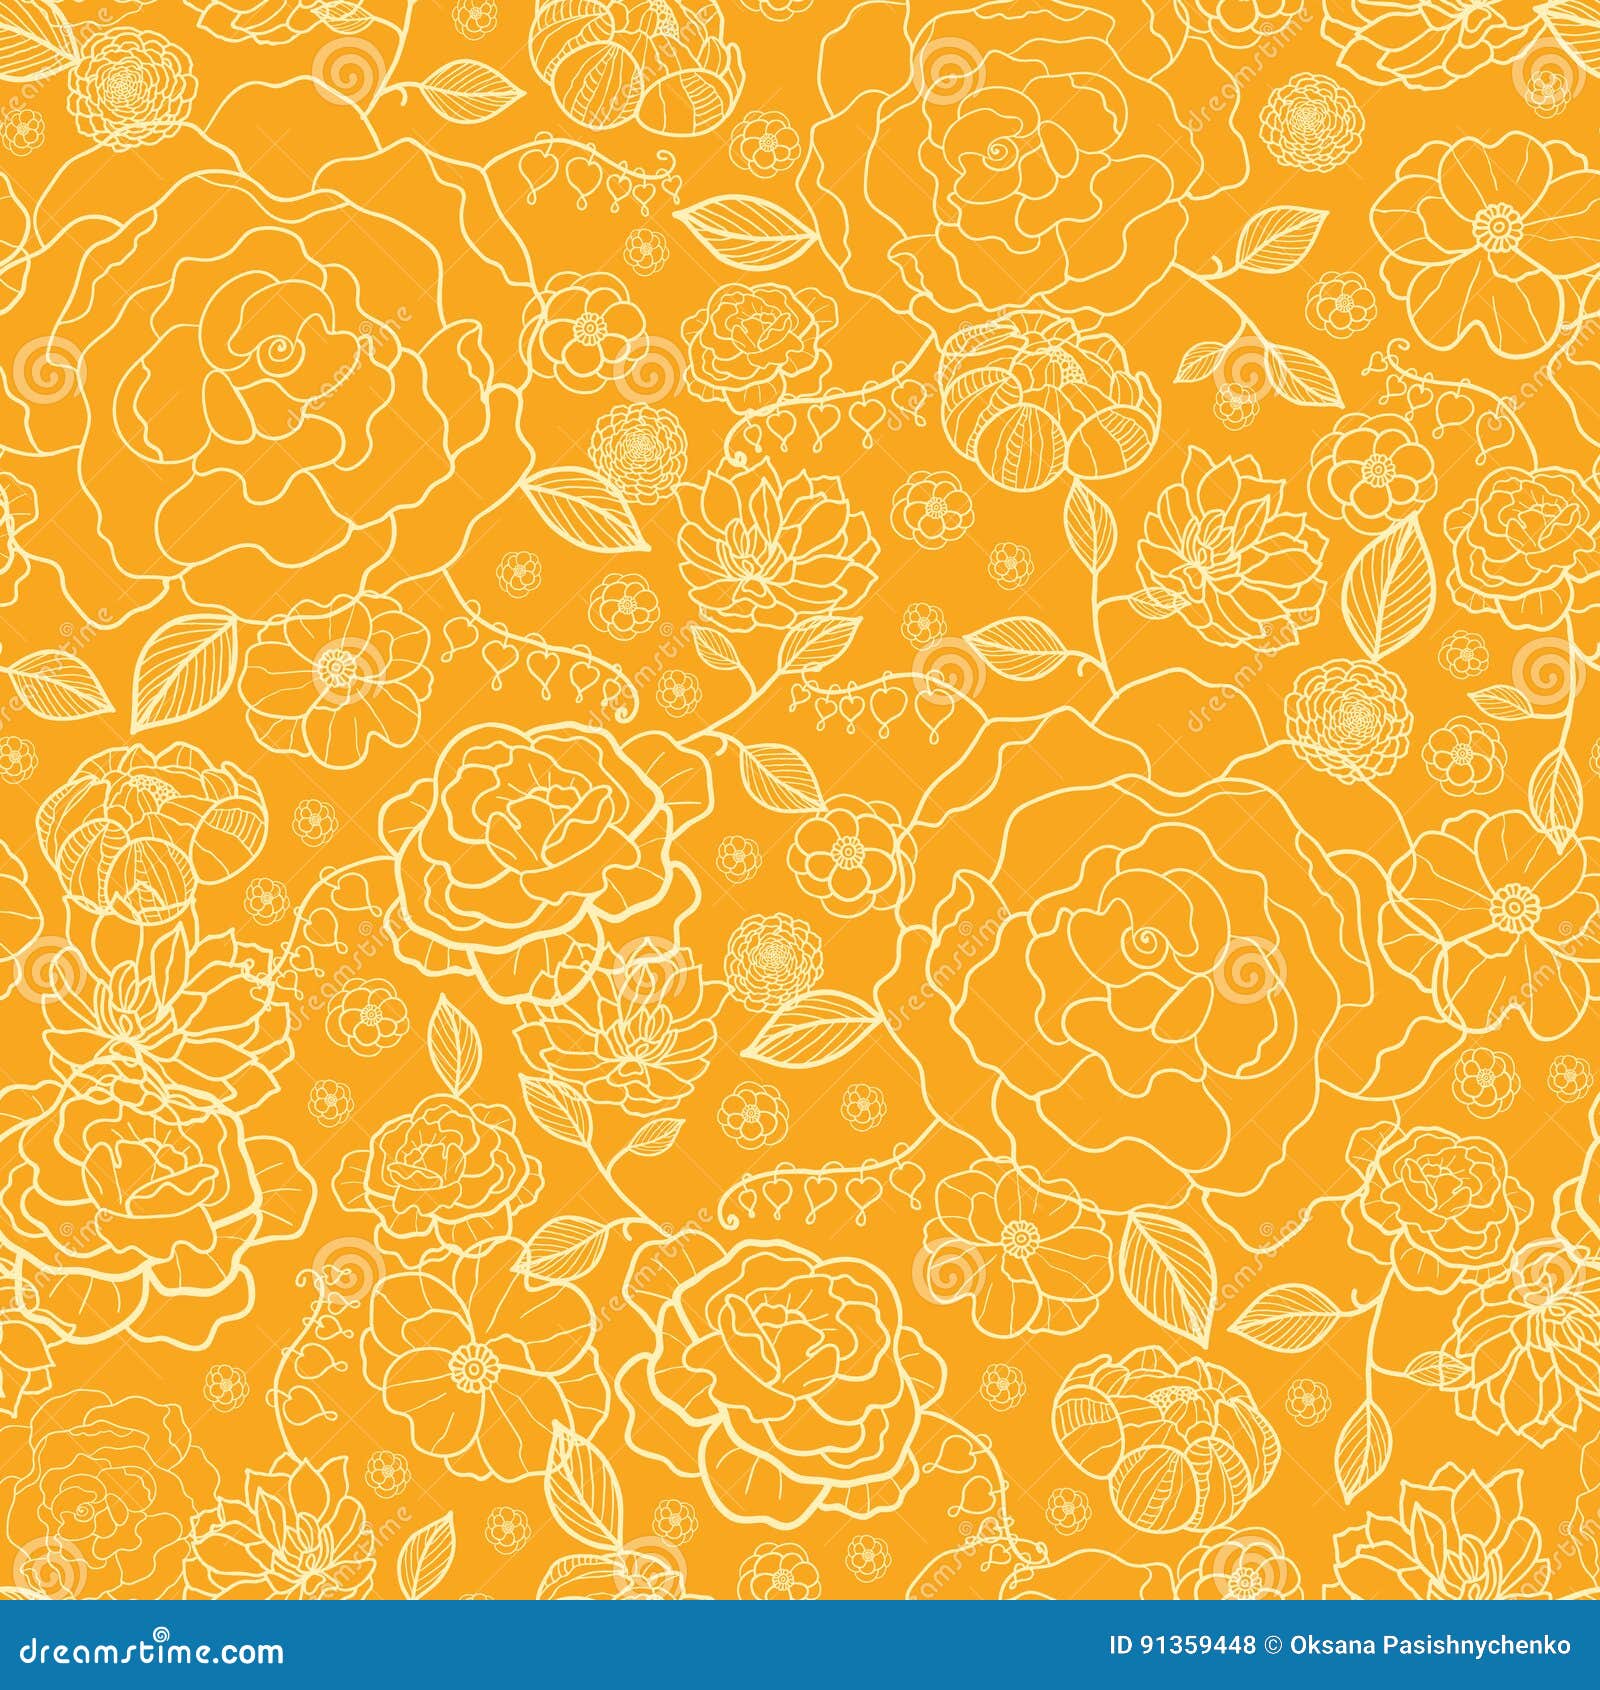 Hãy đến và tận hưởng vẻ đẹp tuyệt vời của hoa cam vàng vector. Hình ảnh này sẽ cho bạn cảm giác như đang đứng giữa một bãi hoa cam rực rỡ với màu sắc tươi sáng và tinh tế. Đến và chiêm ngưỡng tác phẩm nghệ thuật màu sắc này ngay bây giờ!